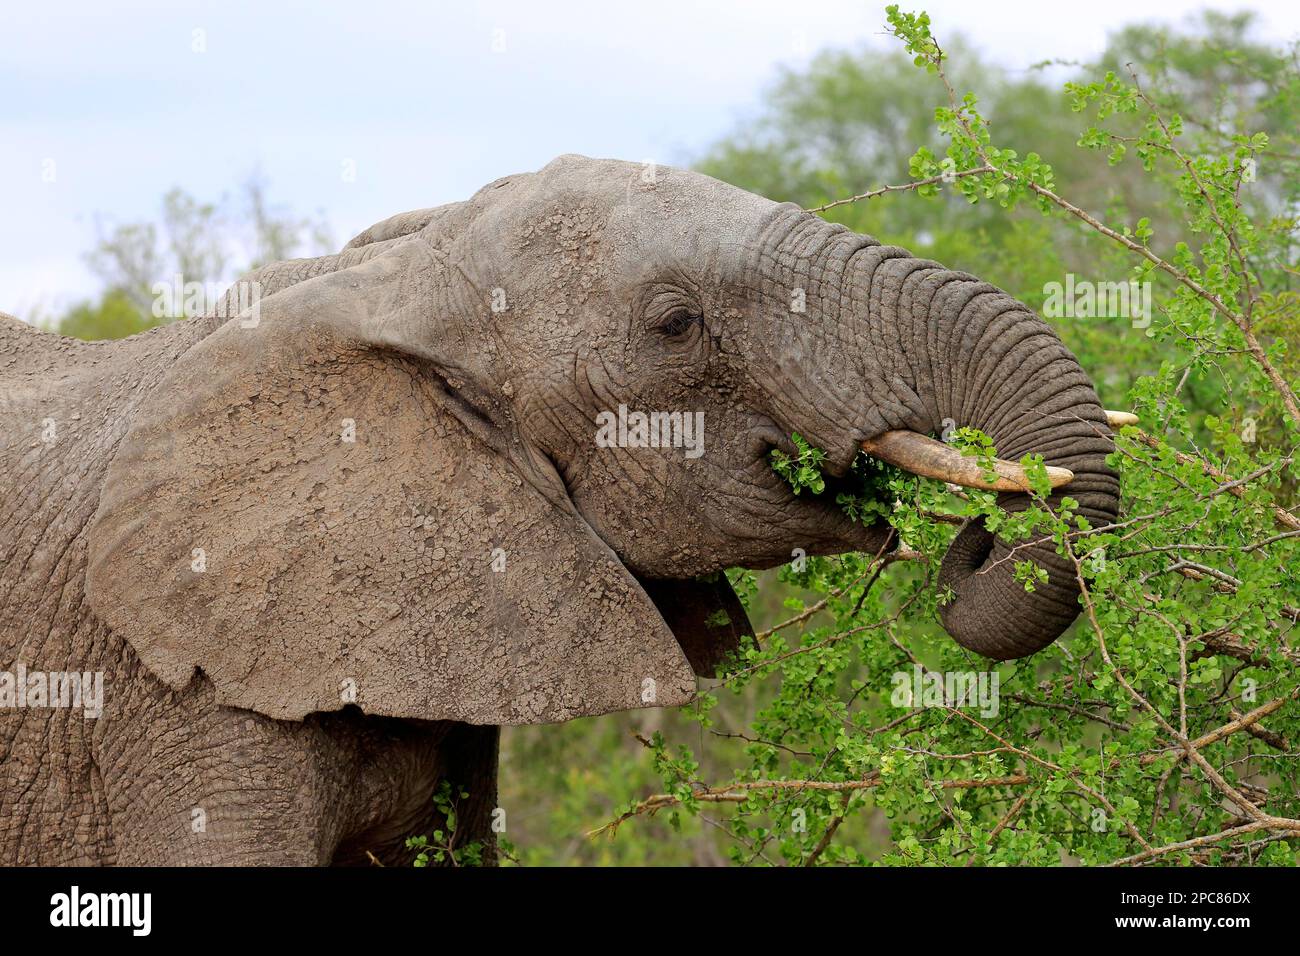 Éléphant d'Afrique (Loxodonta africana), portrait d'alimentation pour adultes, réserve de sable Sabi, parc national Kruger, Afrique du Sud Banque D'Images